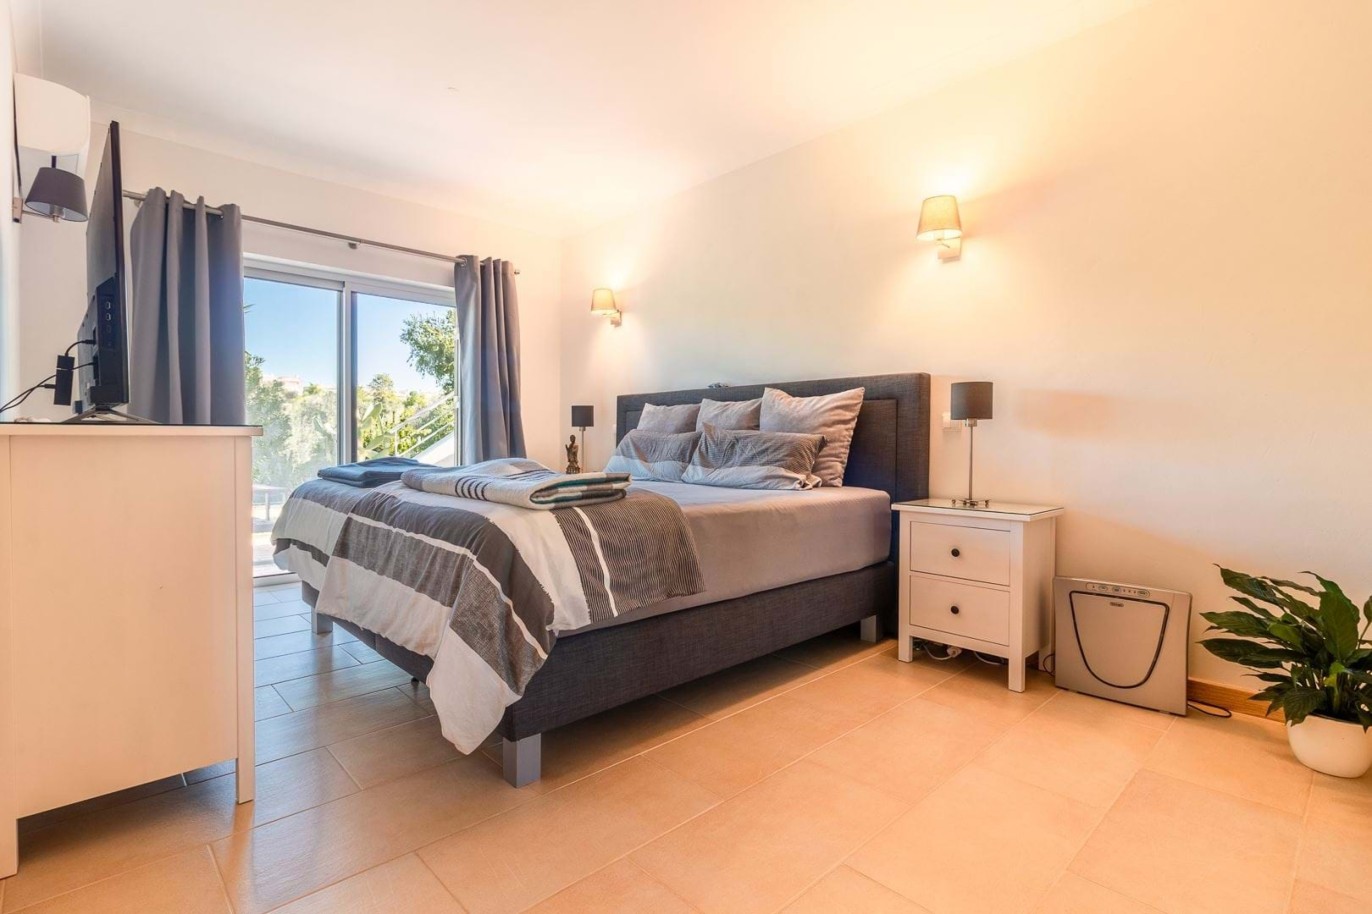 3 bedroom villa with pool for sale in Carvoeiro, Algarve_215288